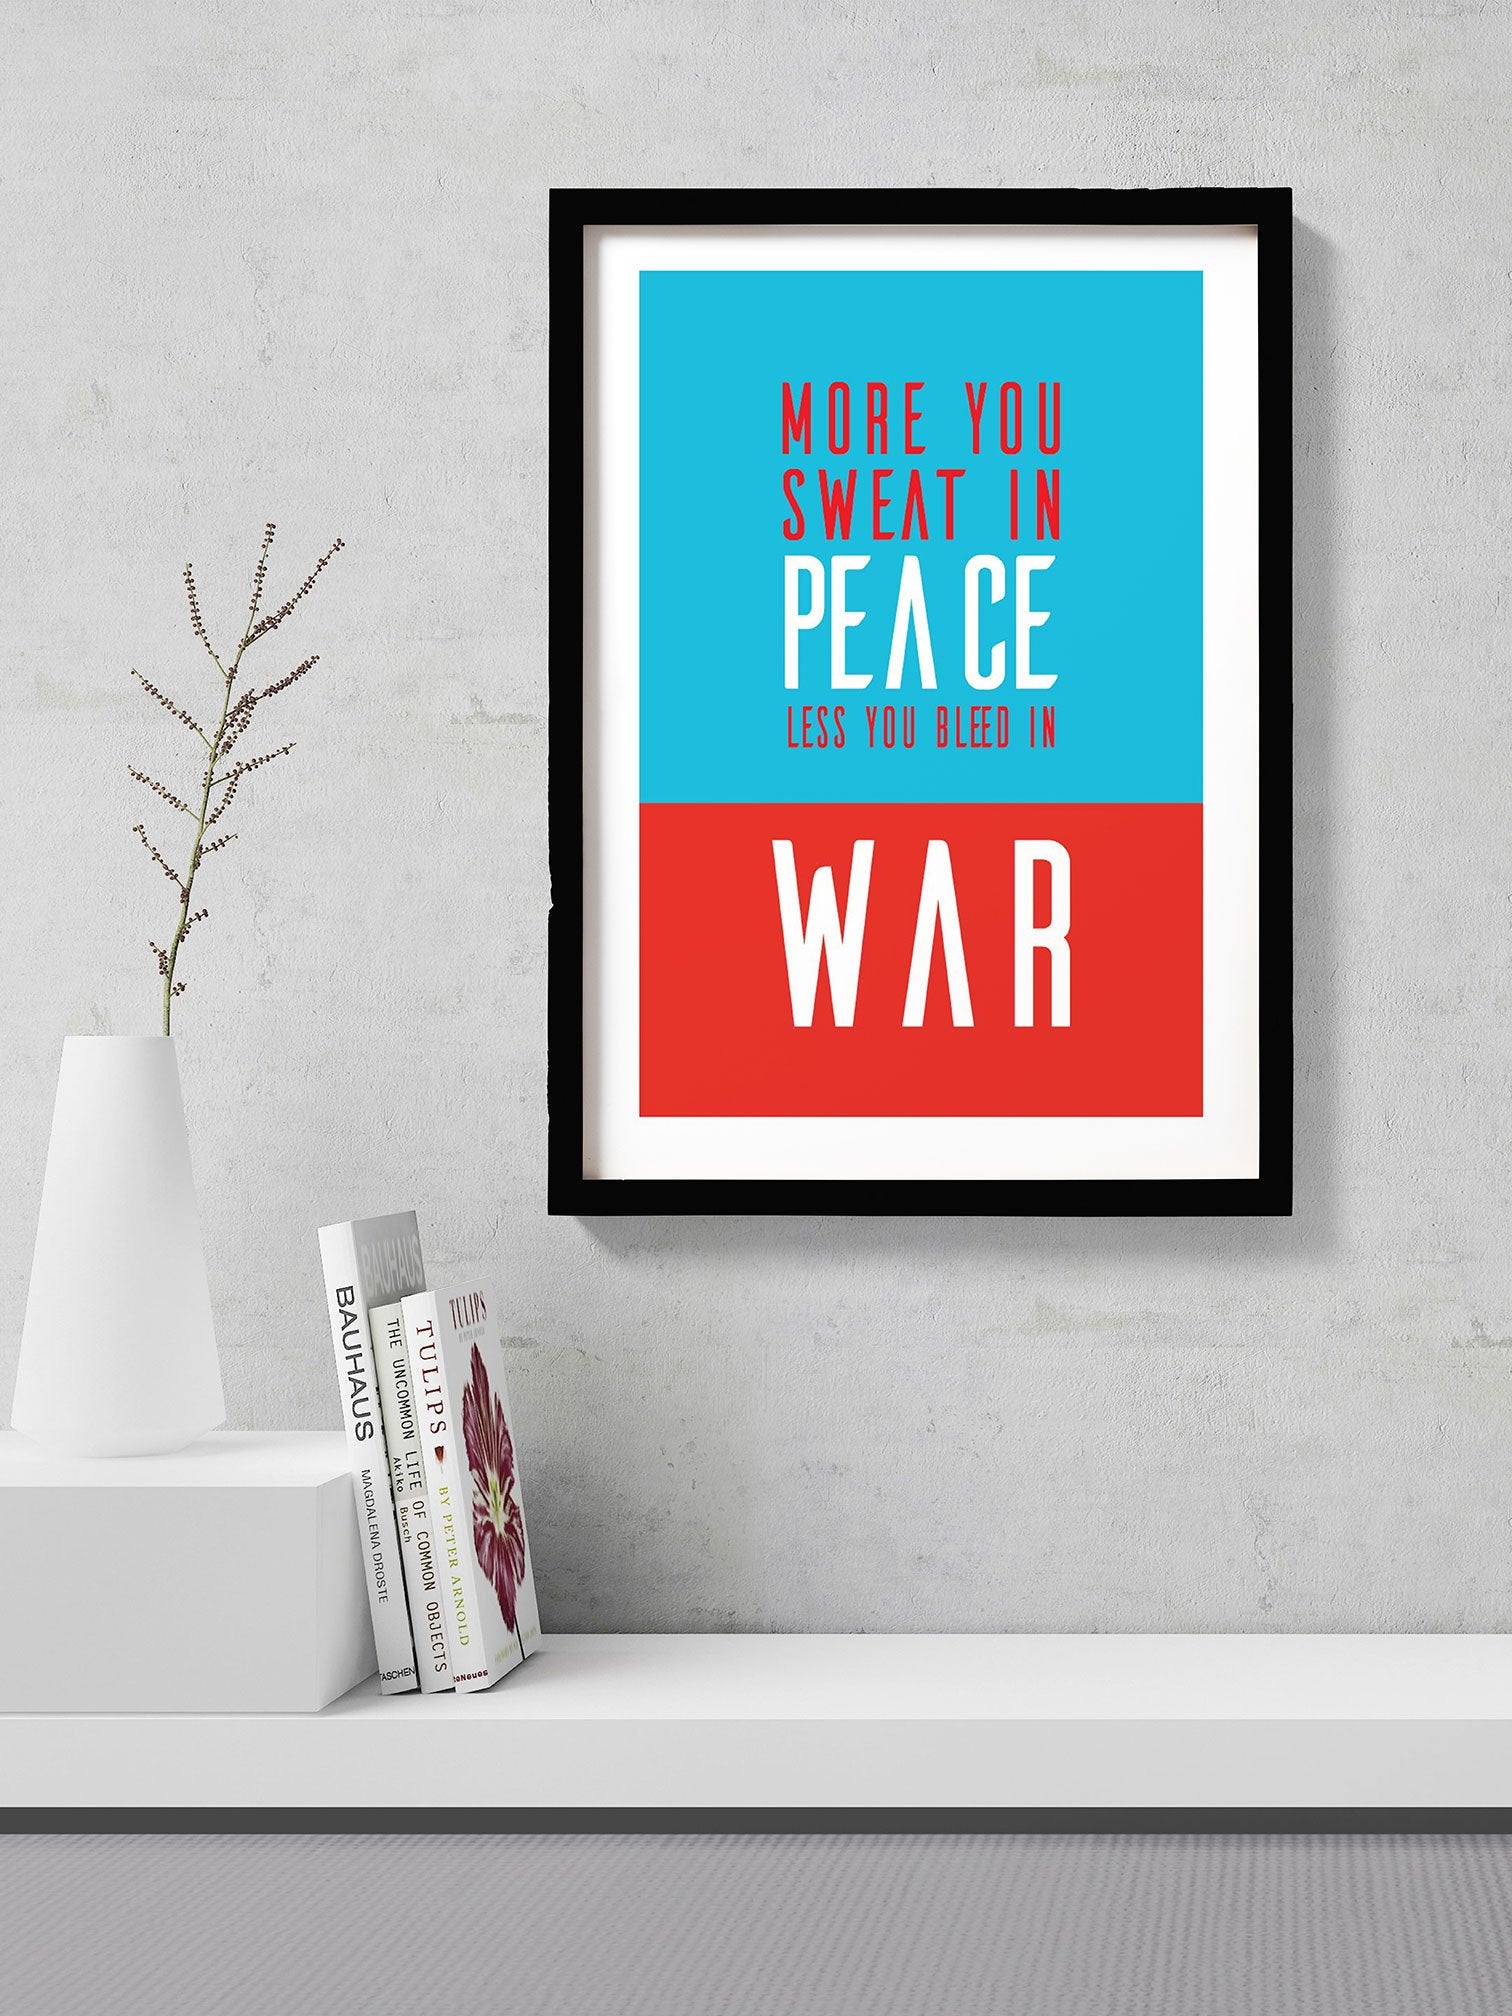 War and peace Poster- Meri Deewar - MeriDeewar